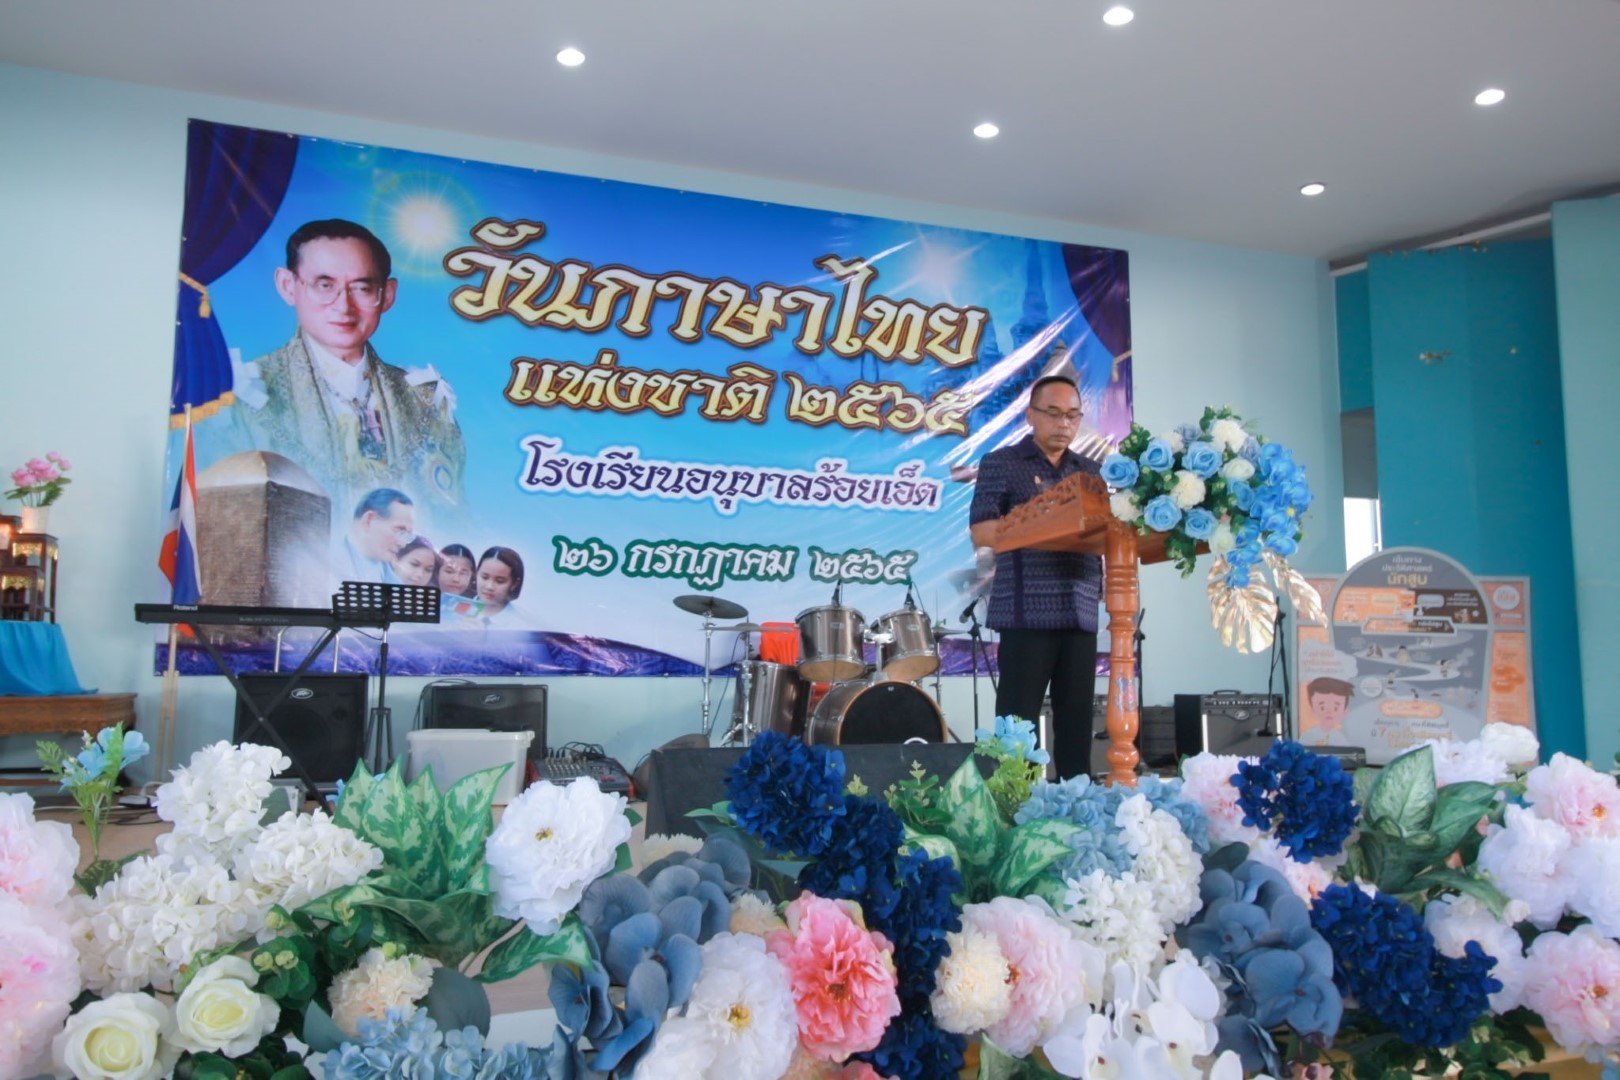 วันภาษาไทย’65 กิจกรรมหลากหลาย ยิ่งใหญ่ อนุบาลร้อยเอ็ด